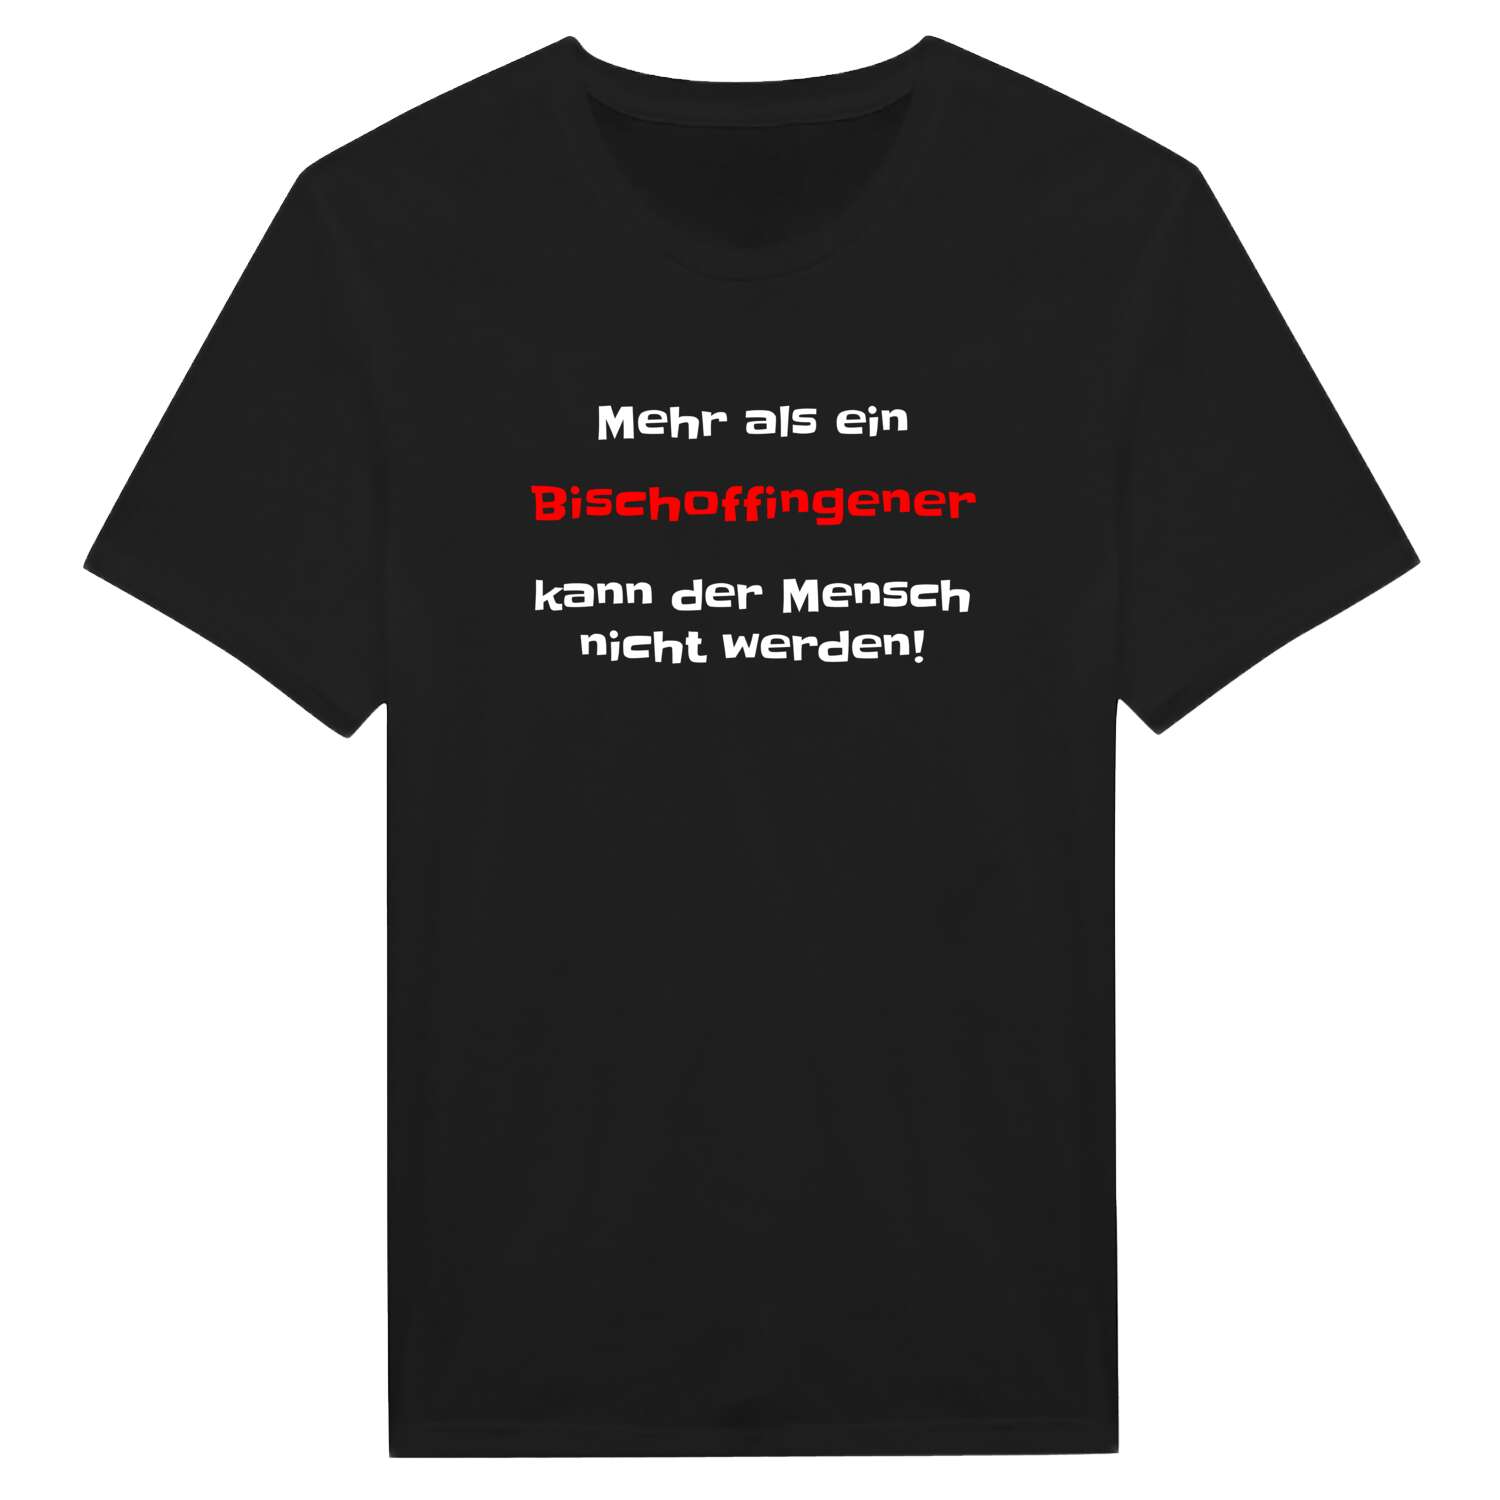 Bischoffingen T-Shirt »Mehr als ein«